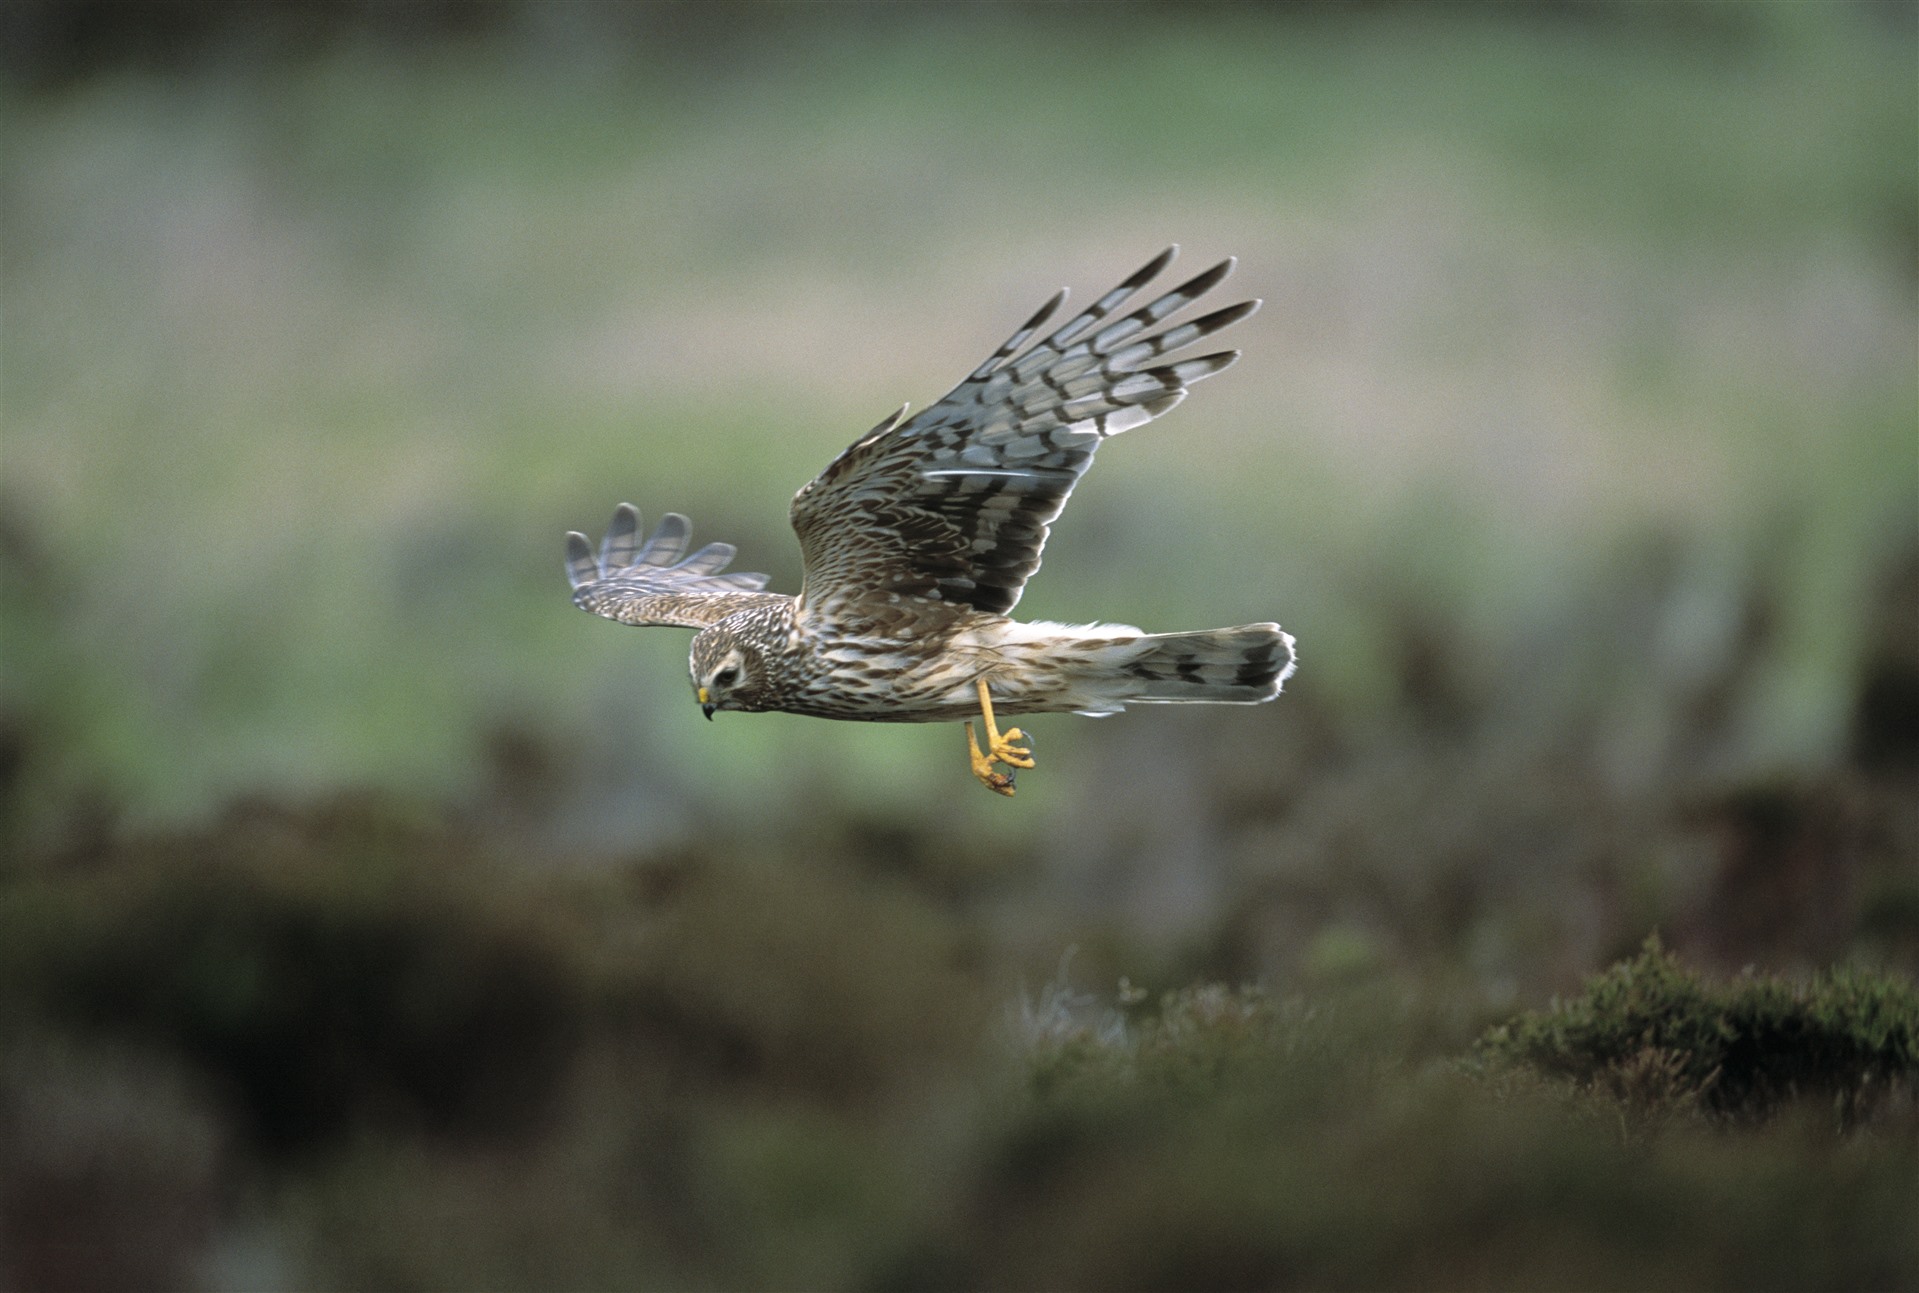 A female Hen Harrier in flight.